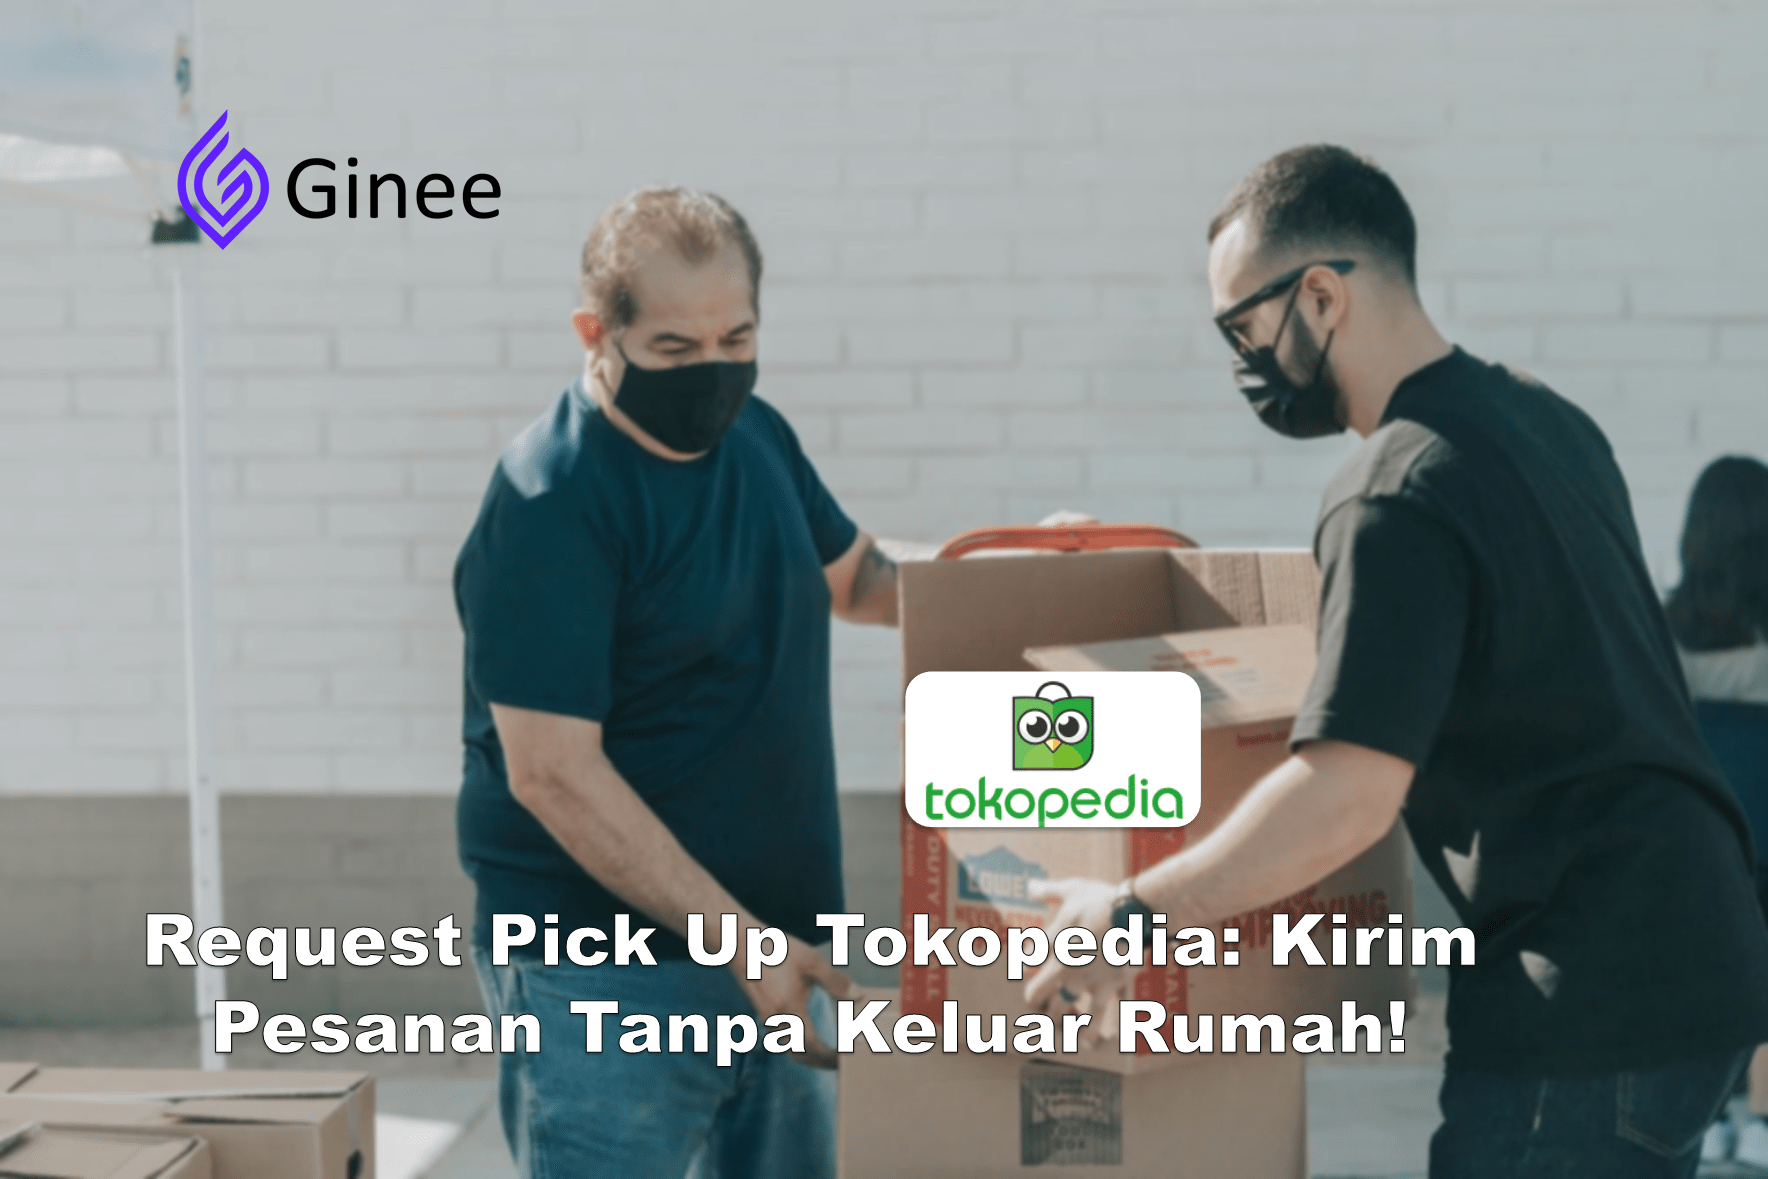 Cara Request Pickup Sicepat Tokopedia. Request Pick Up Tokopedia: Kirim Pesanan Gak Pake Ribet!